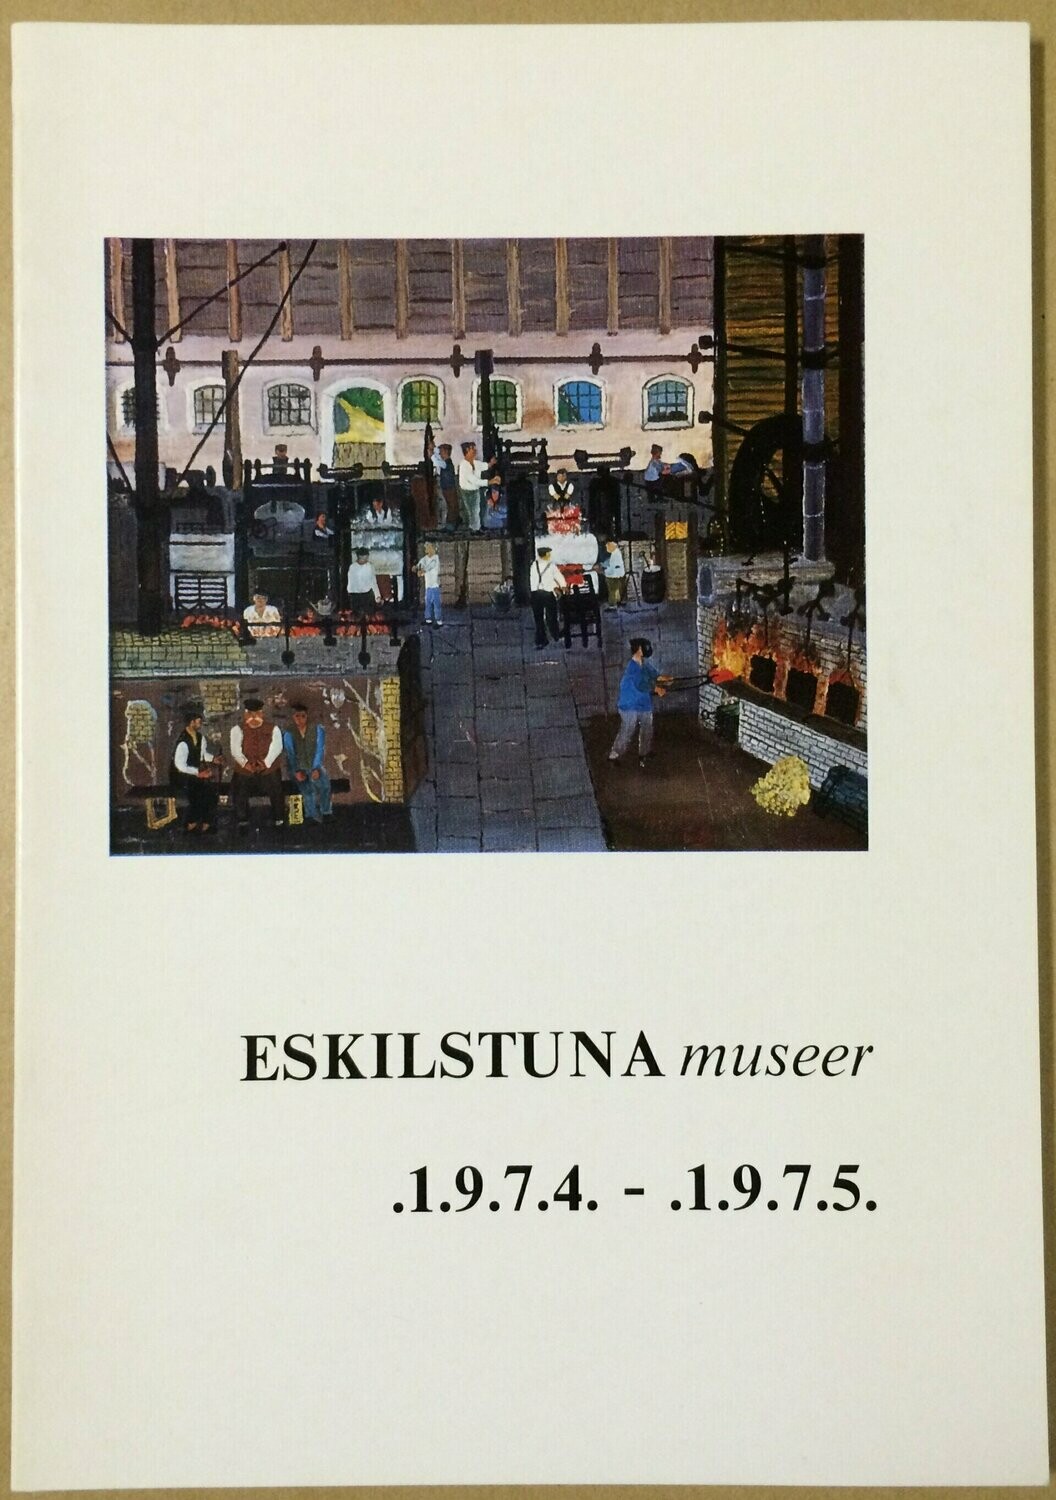 Eskilstuna museer .1.9.7.4. - .1.9.7.5.